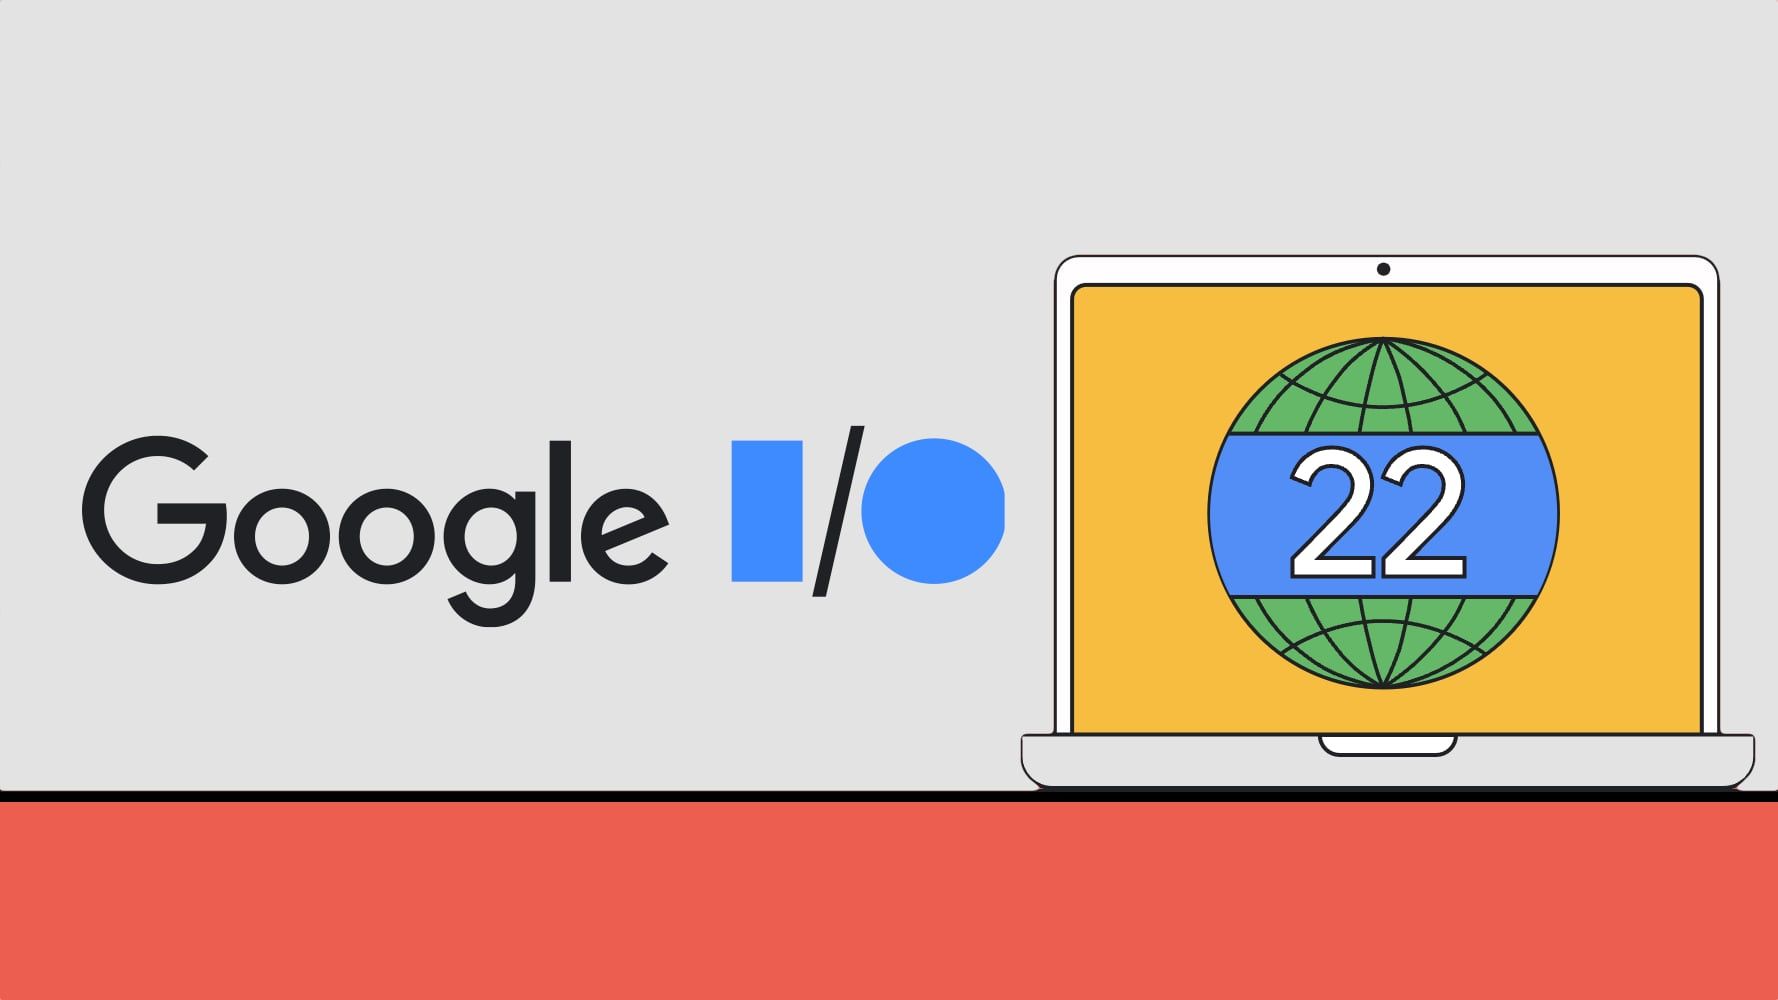 Heute werden wir uns mit der Google I/O 2022, der Registrierung, dem Zeitplan und den Ankündigungen wie Google Pixel 6a befassen, wenn die Gerüchte wahr sind.